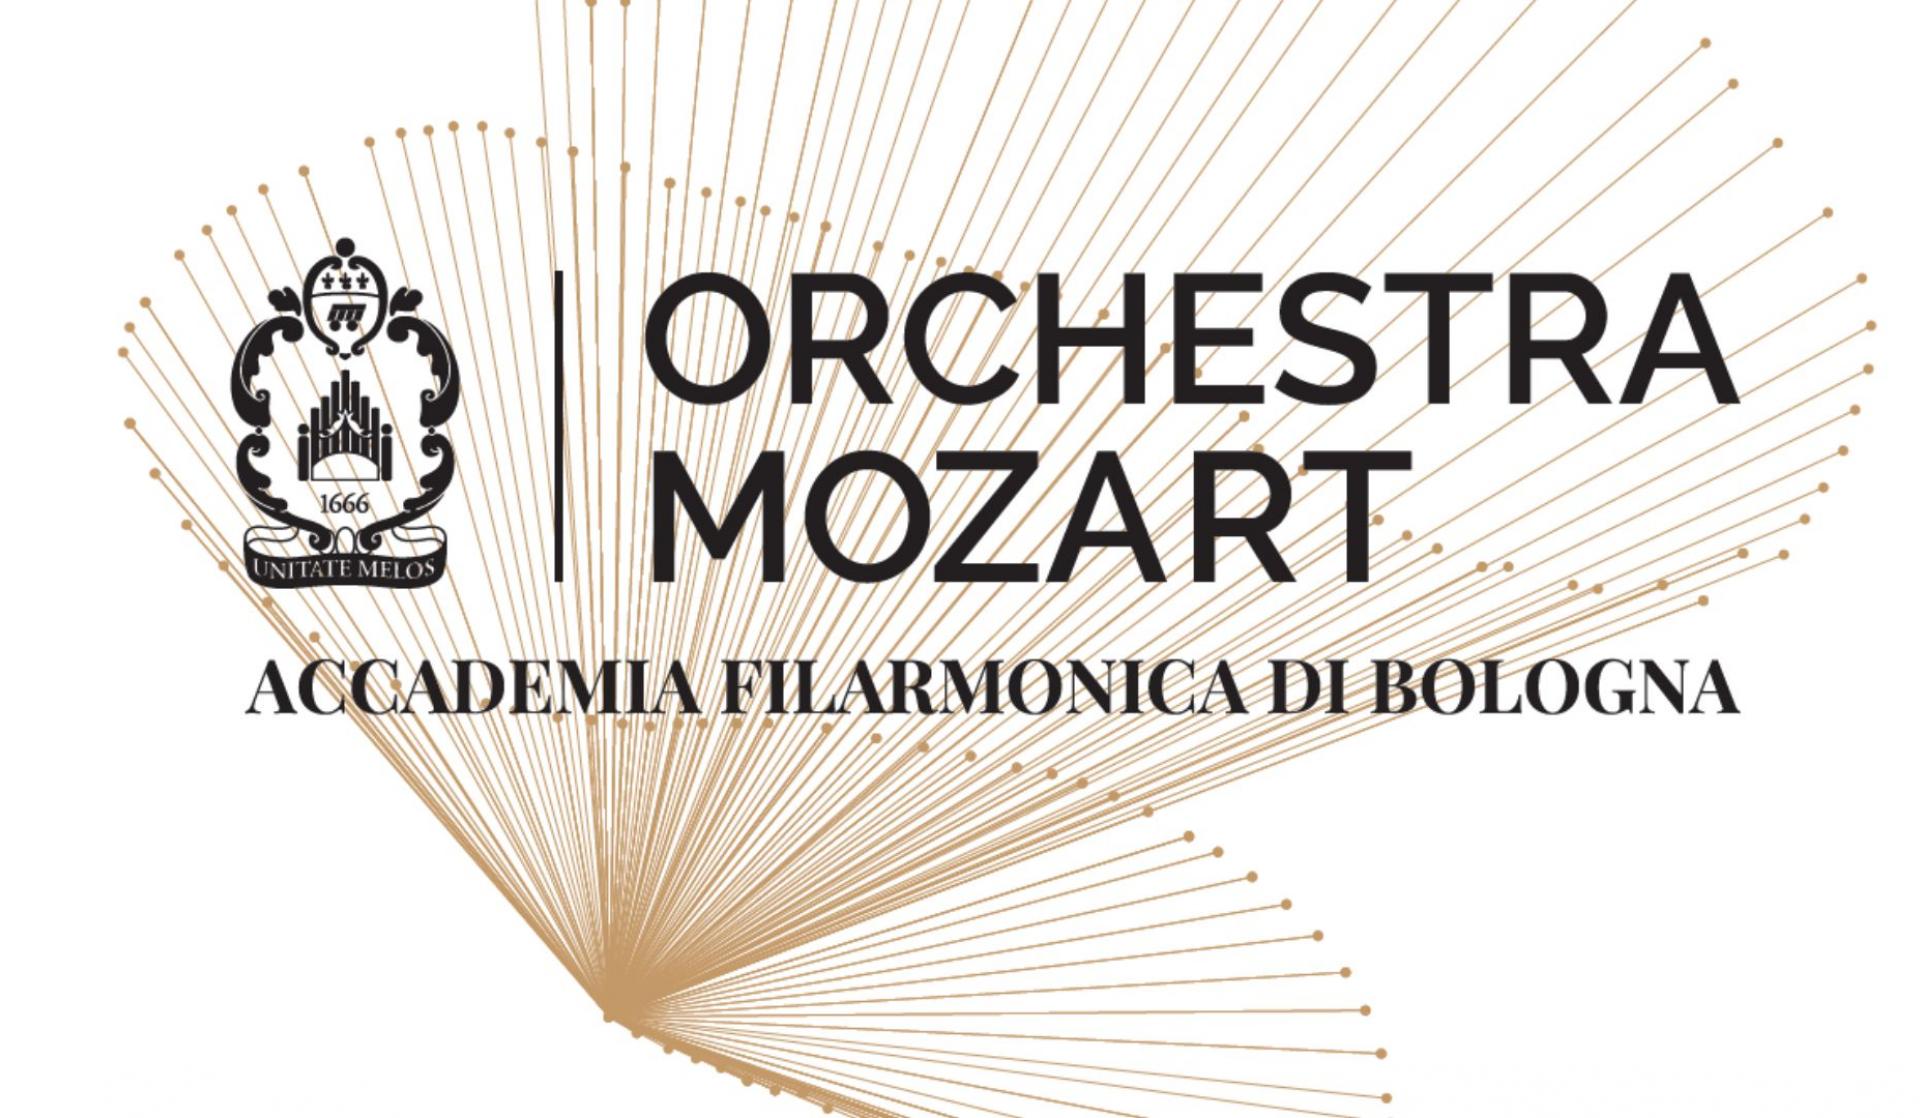 Solisti Orchestra Mozart